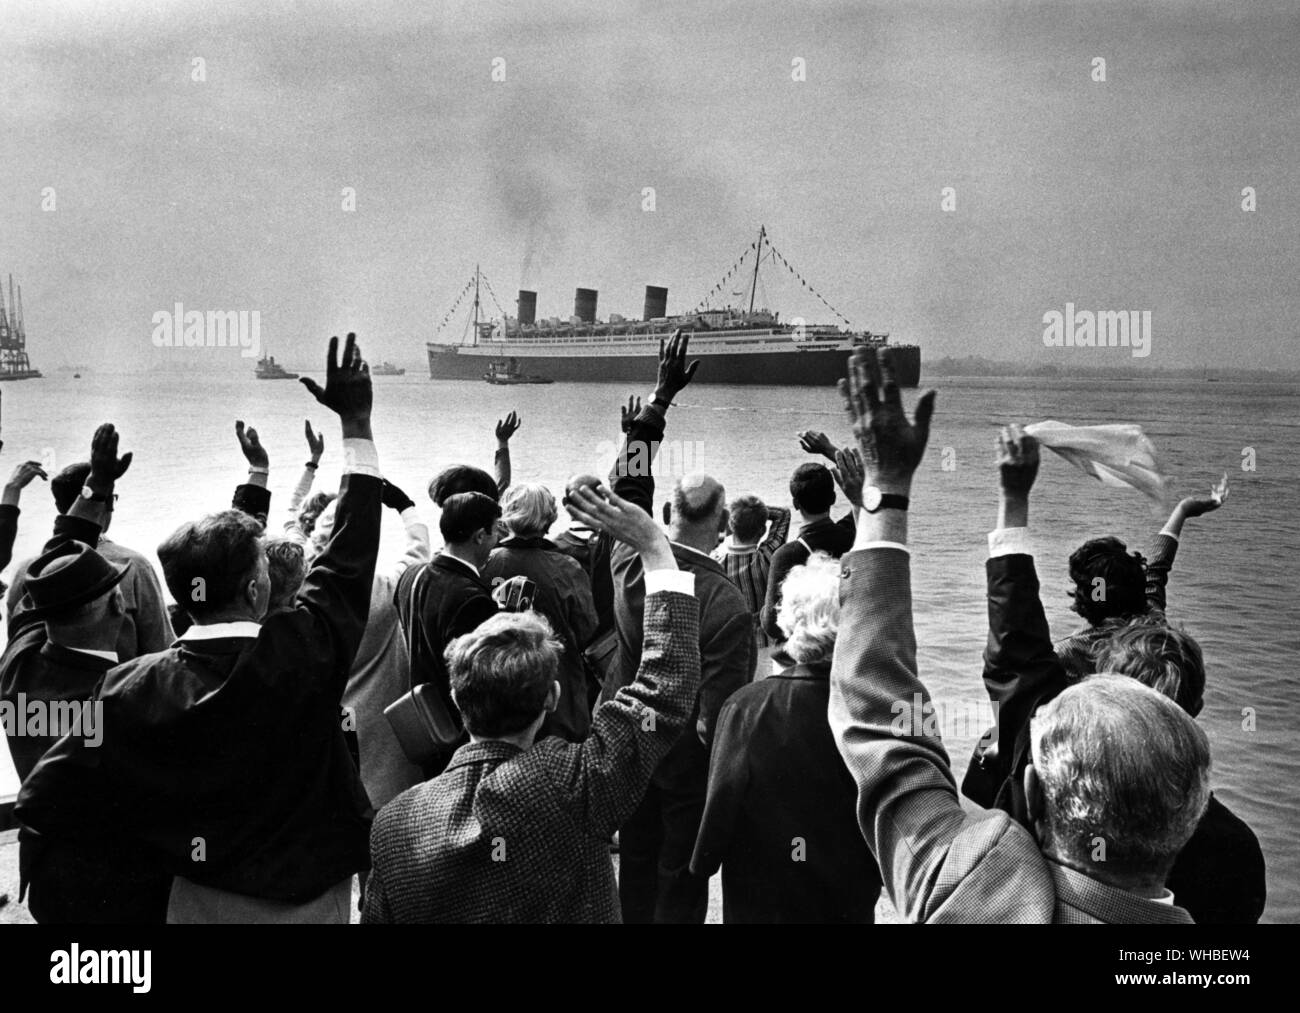 Le dernier voyage du Queen Mary - foule vague et applaudir à Southampton dans le grand paquebot de Cunard Queen Mary, voiles sur son dernier voyage à New York avant d'être remis à son nouveau propriétaire américain - 16 septembre 1967. Banque D'Images